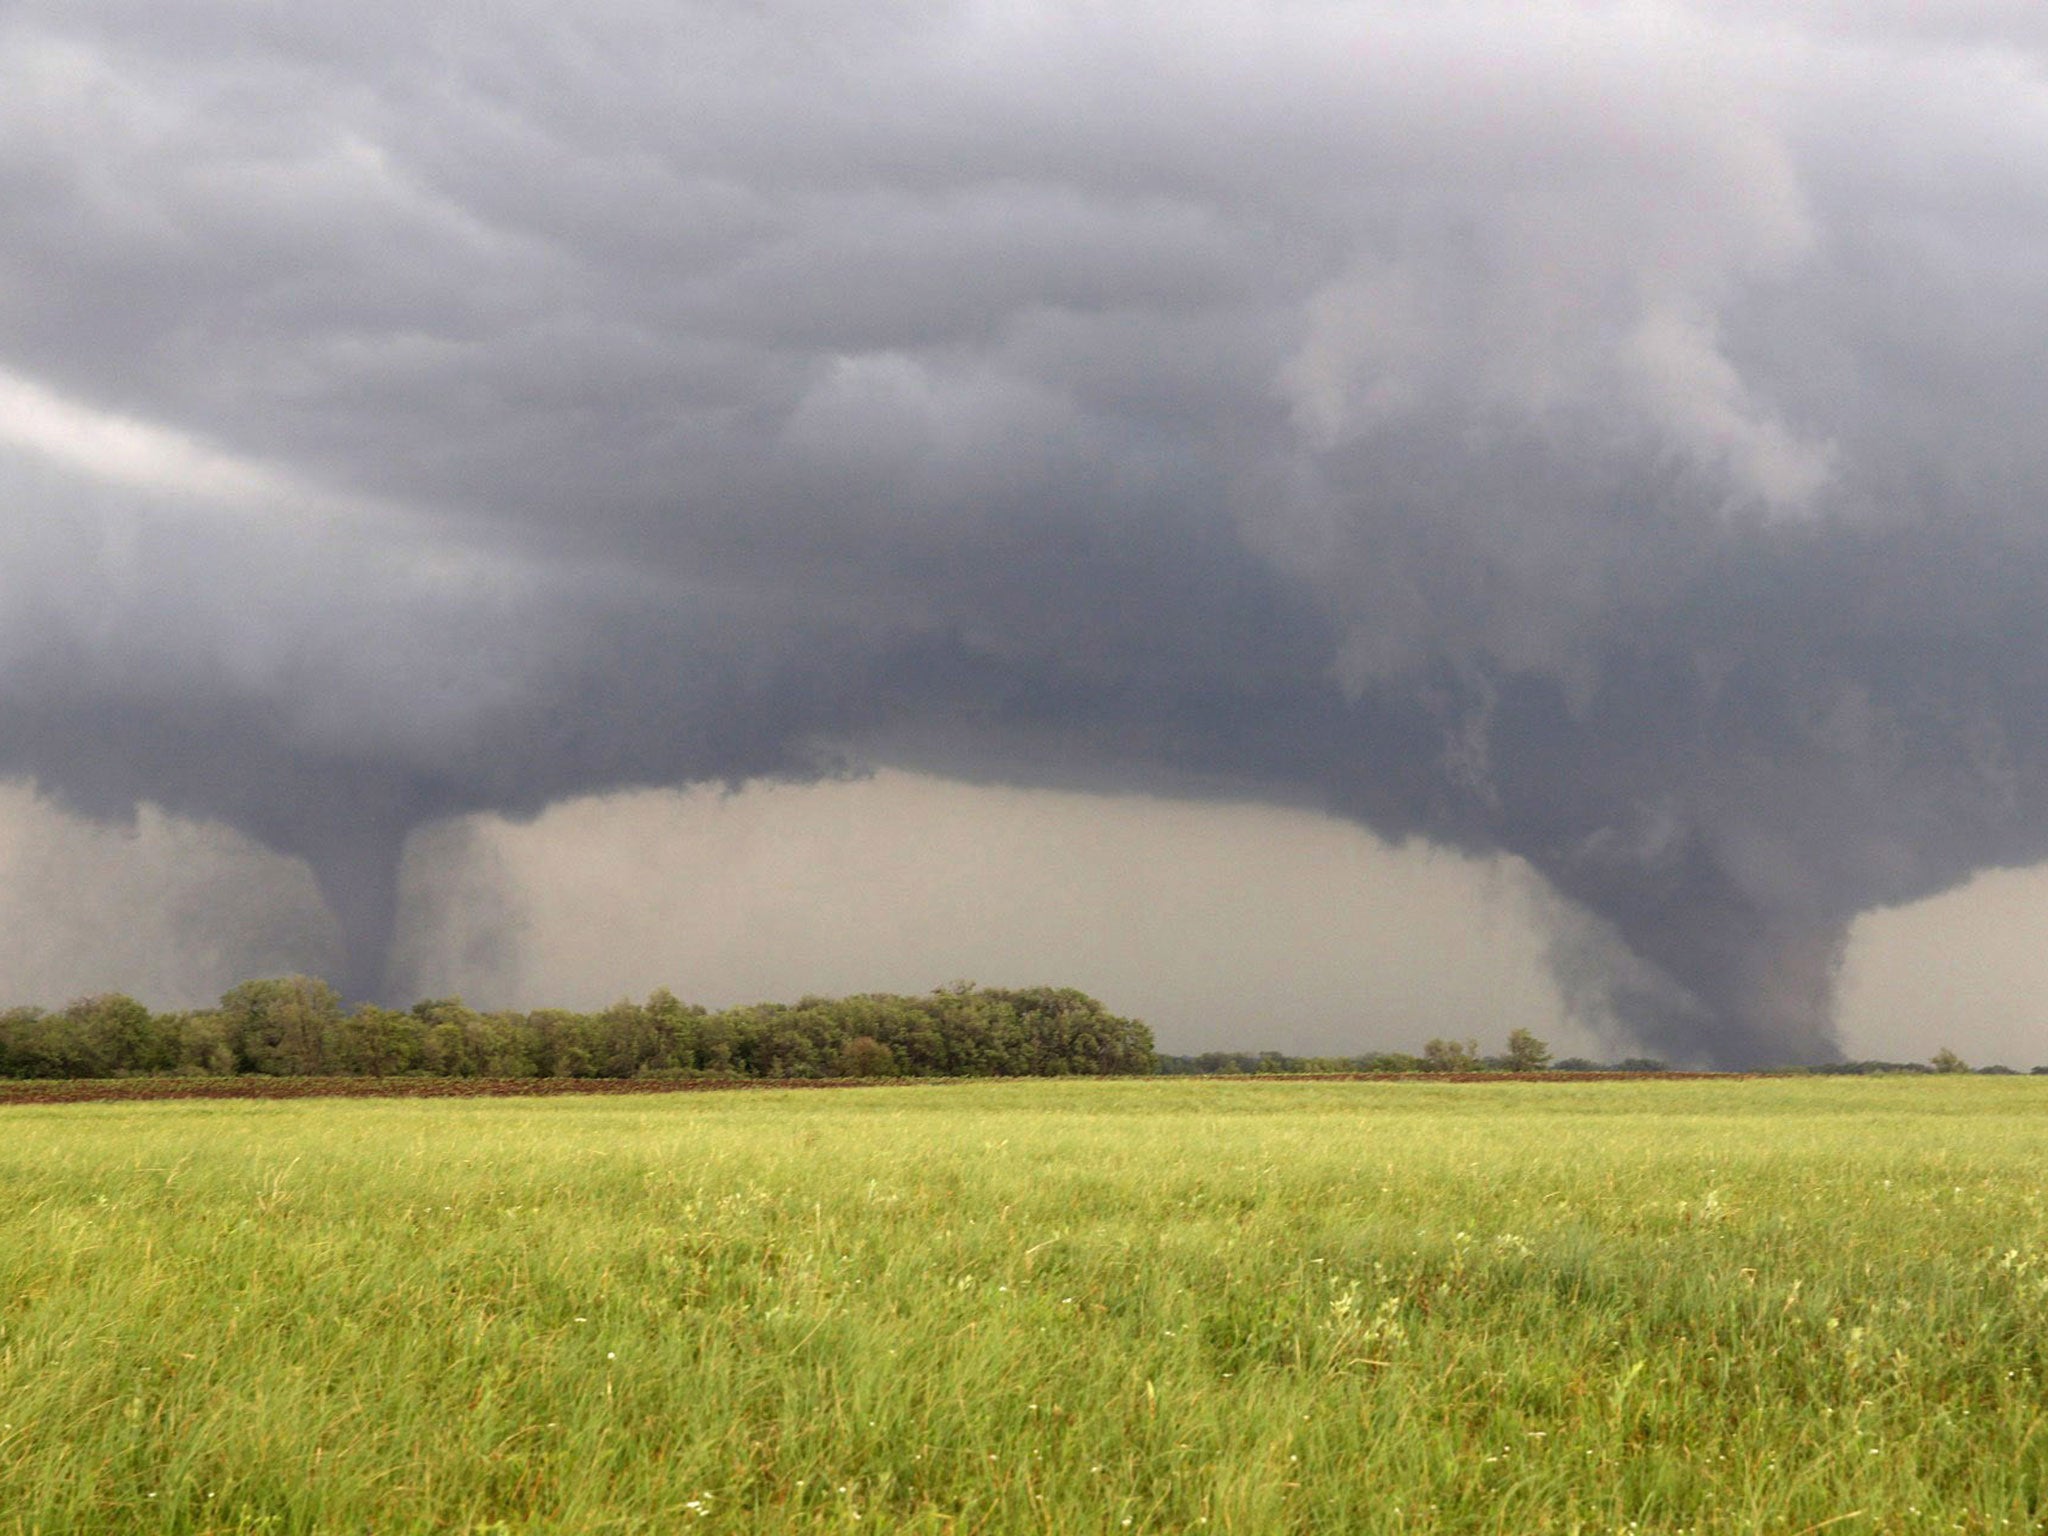 Two tornados approach Pilger, Nebraska